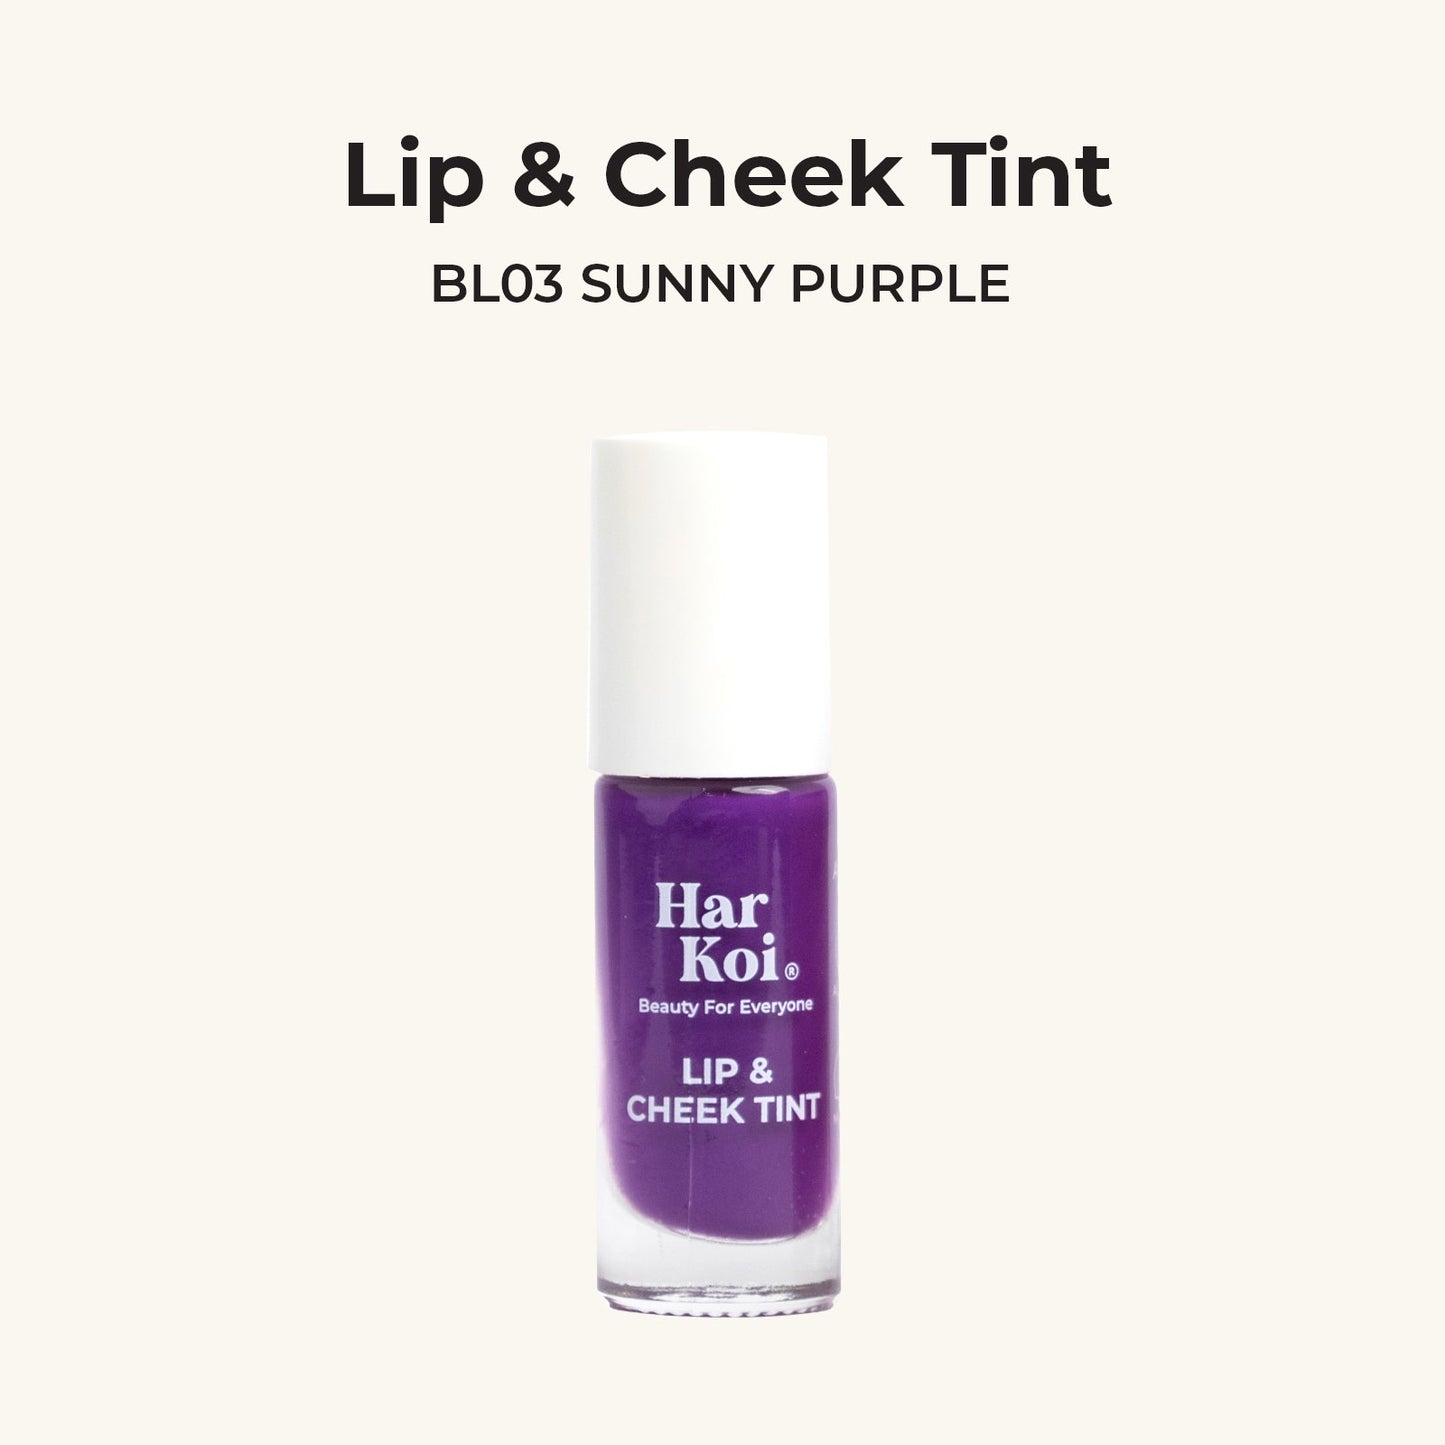 The Harkoi Lip & Cheek Tint- Sunny Purple